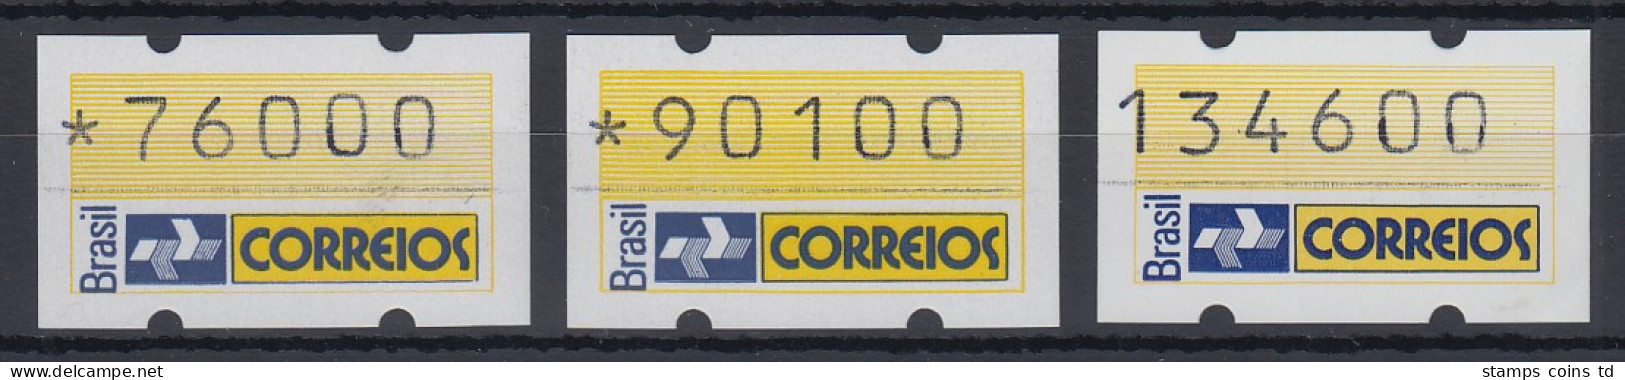 Brasilien Klüssendorf-ATM 1993 Postemblem Mi-Nr 4 Satz 76000 - 90100 - 134600 ** - Franking Labels